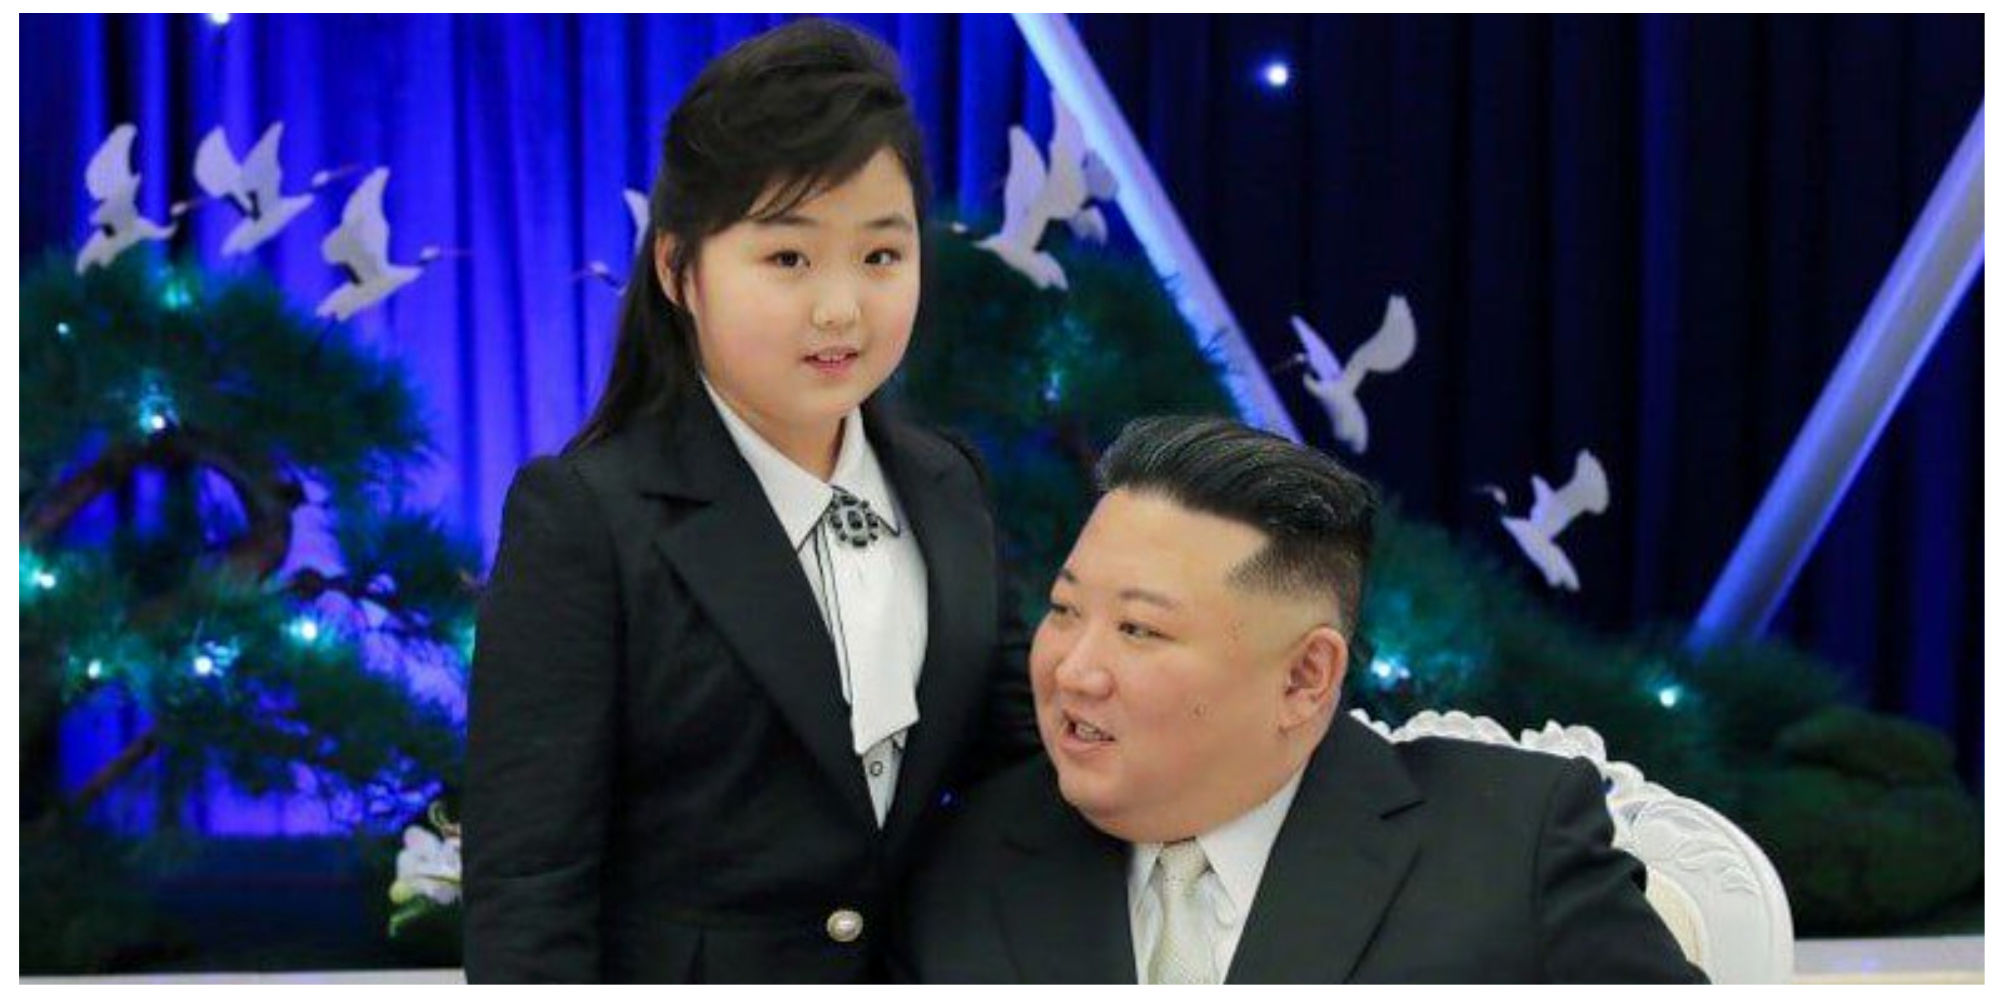 کت گران قیمت دختر رهبر کره شمالی جنجالی شد/ عکس